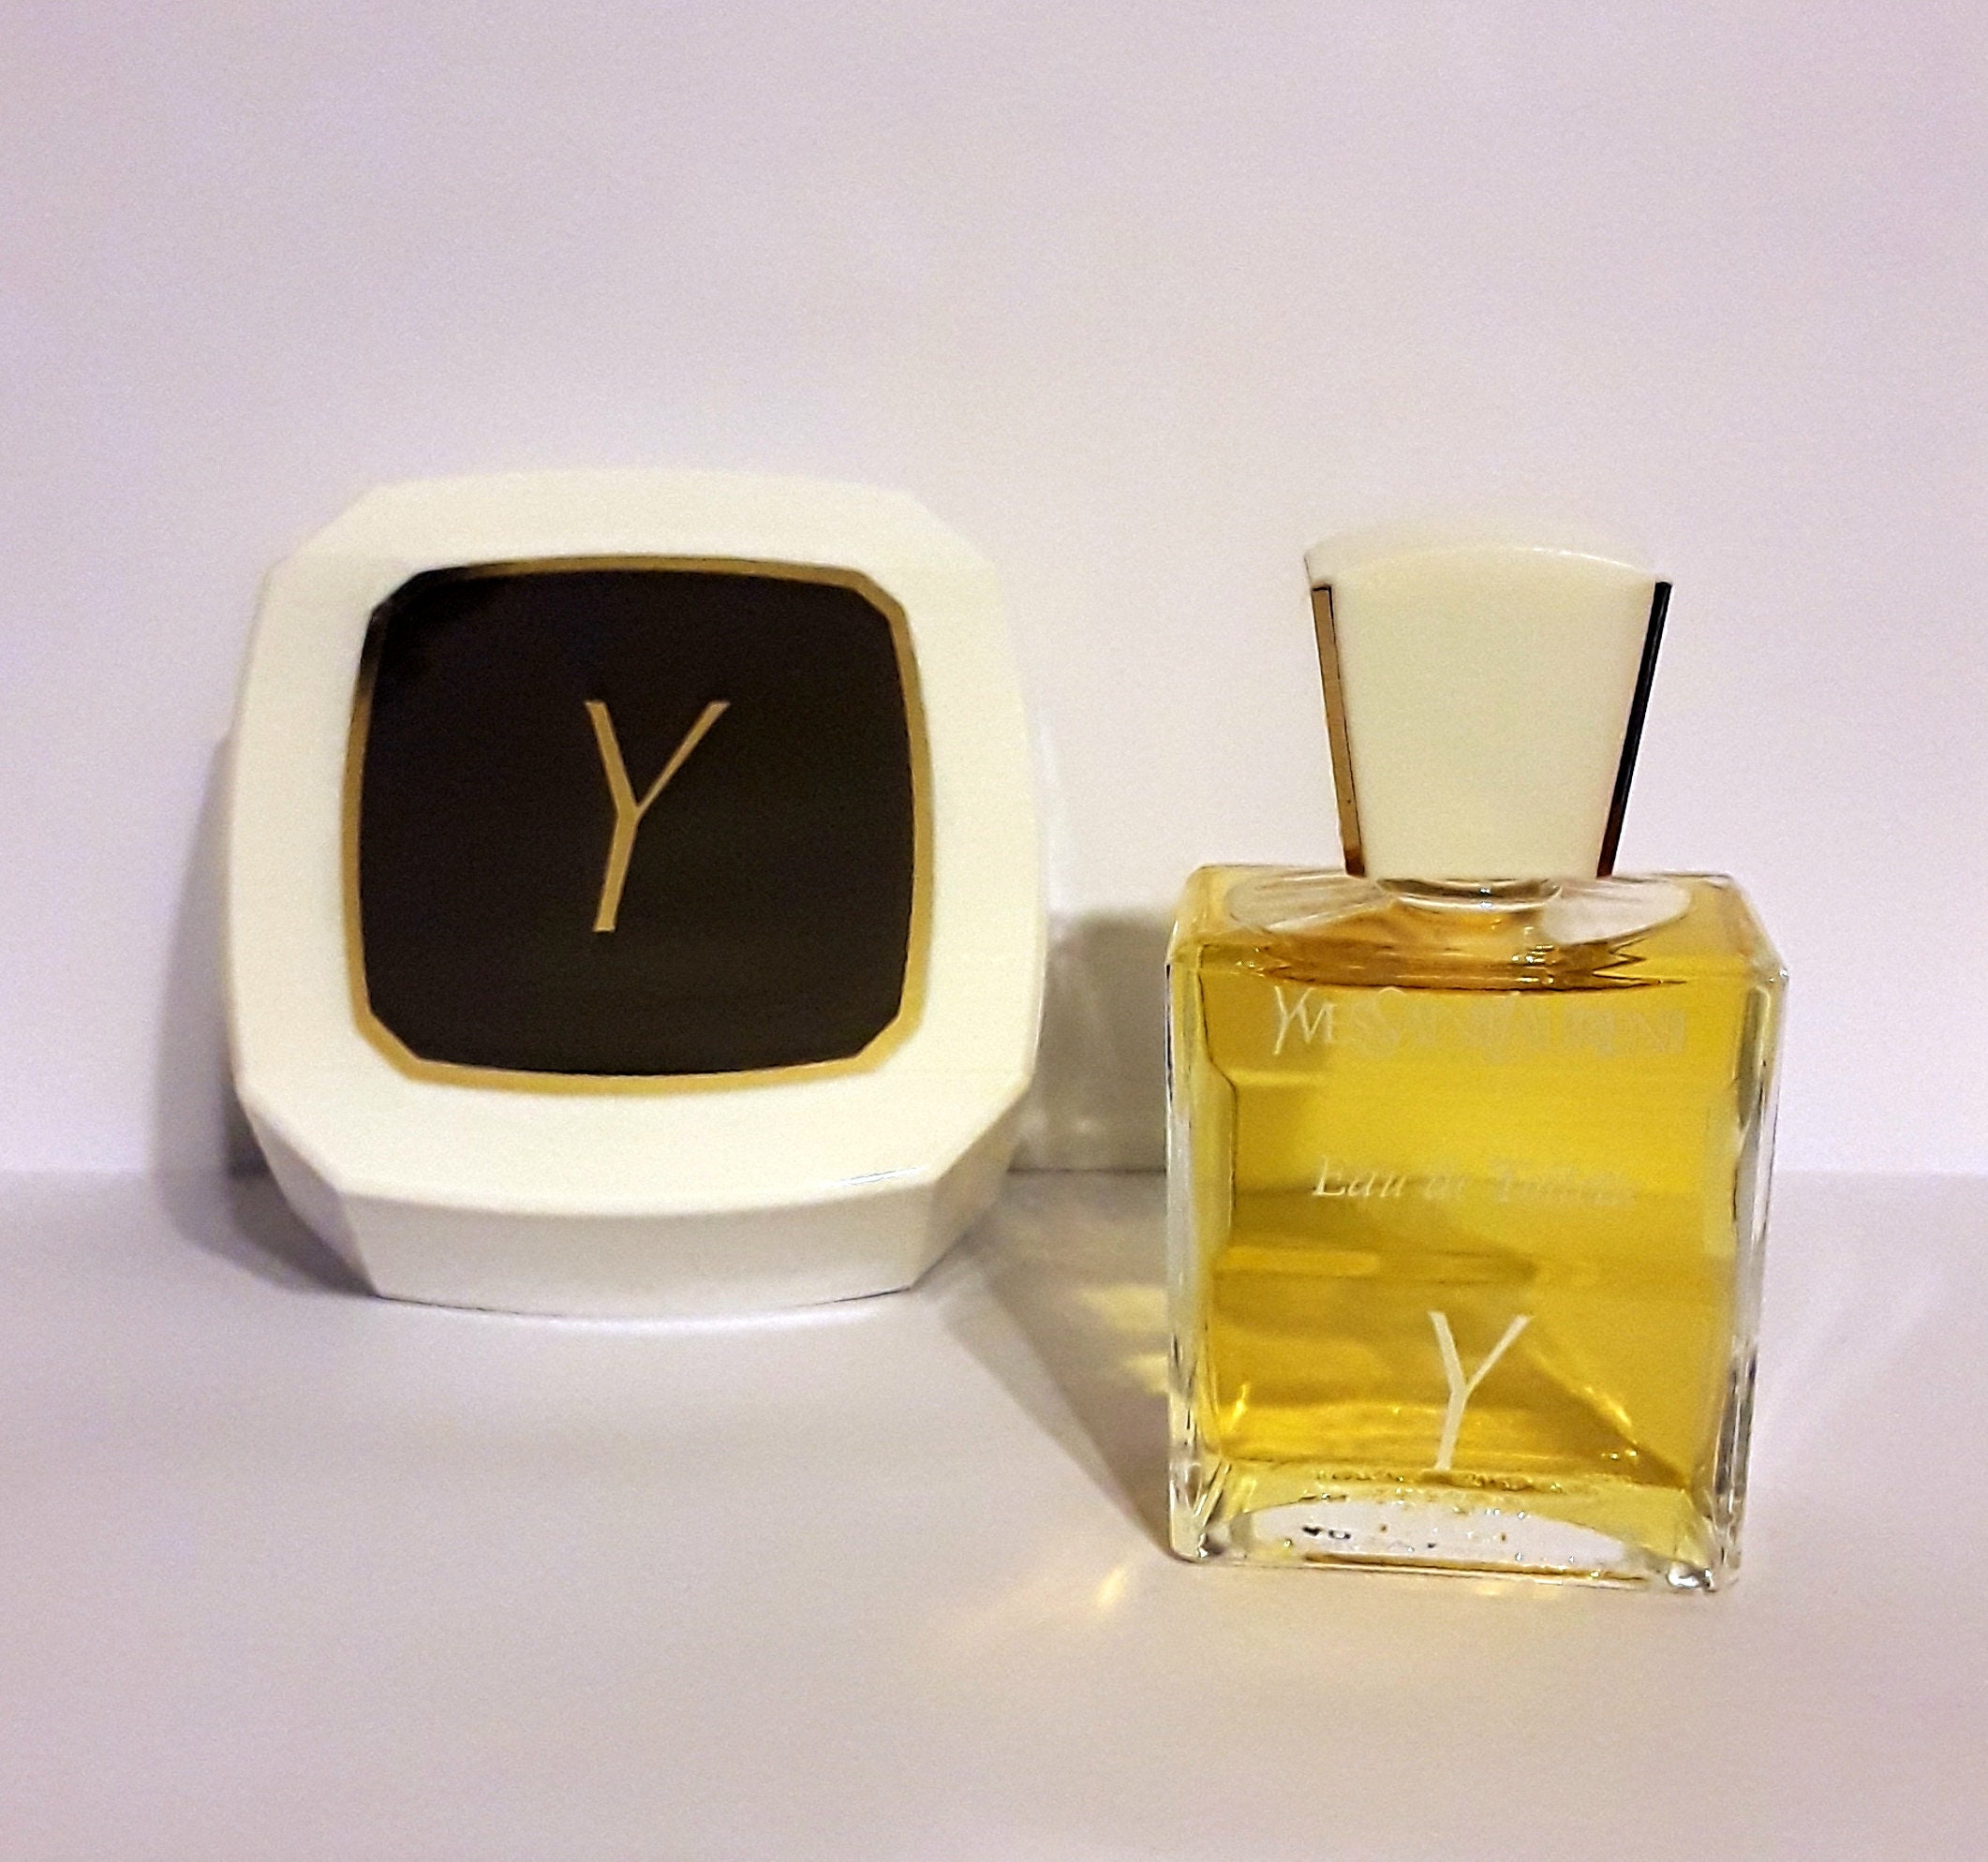 Vintage Y by Yves Saint Laurent 1.7 oz Eau de Toilette & 100g -   Portugal